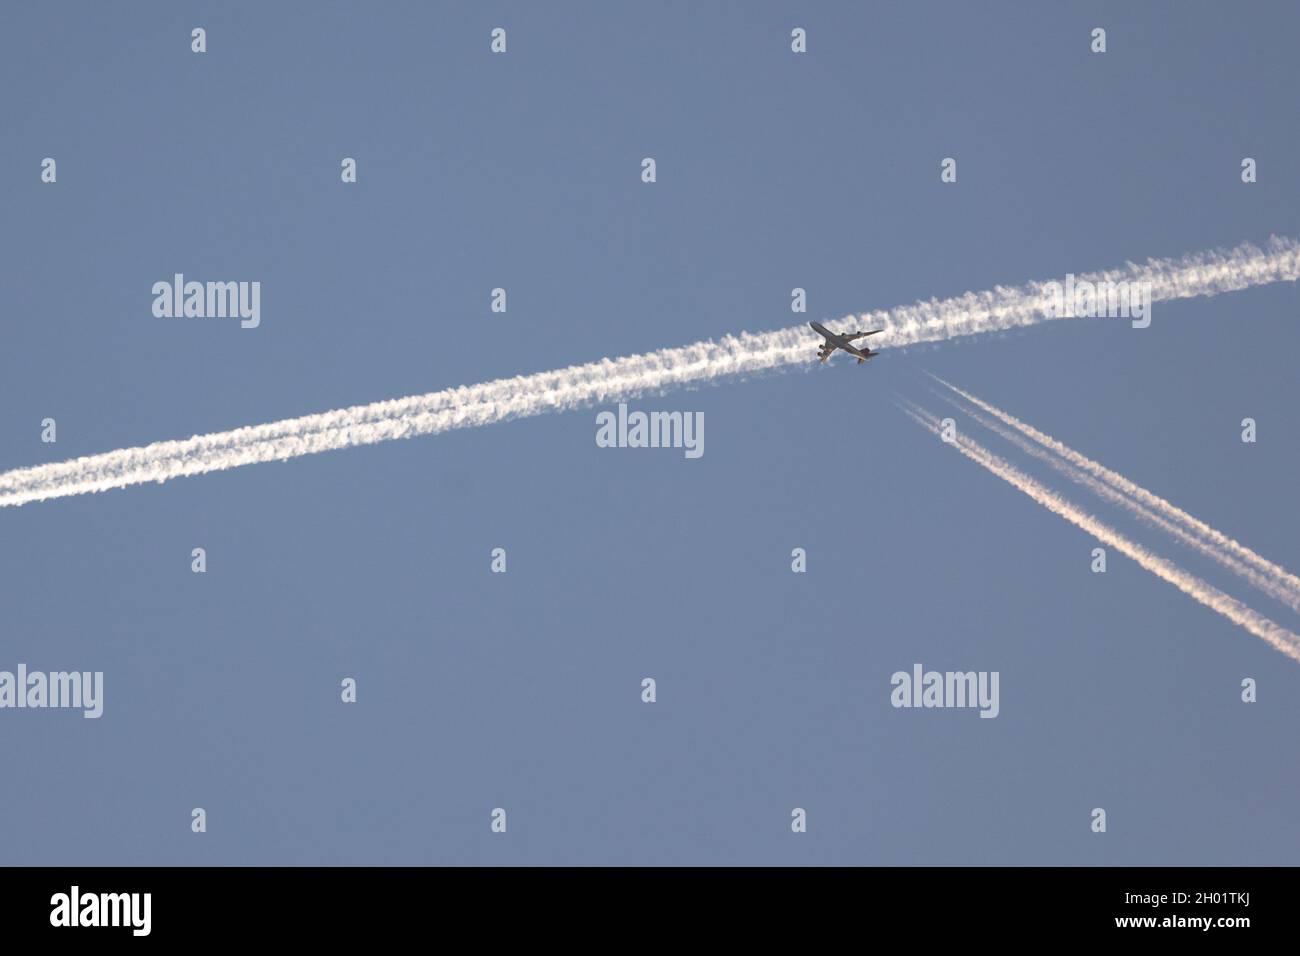 circulation dans le ciel.Un avion ist traversant le sentier de condensation qu'un autre avion a marqué dans le ciel quelques secondes auparavant.Tôt le matin Banque D'Images